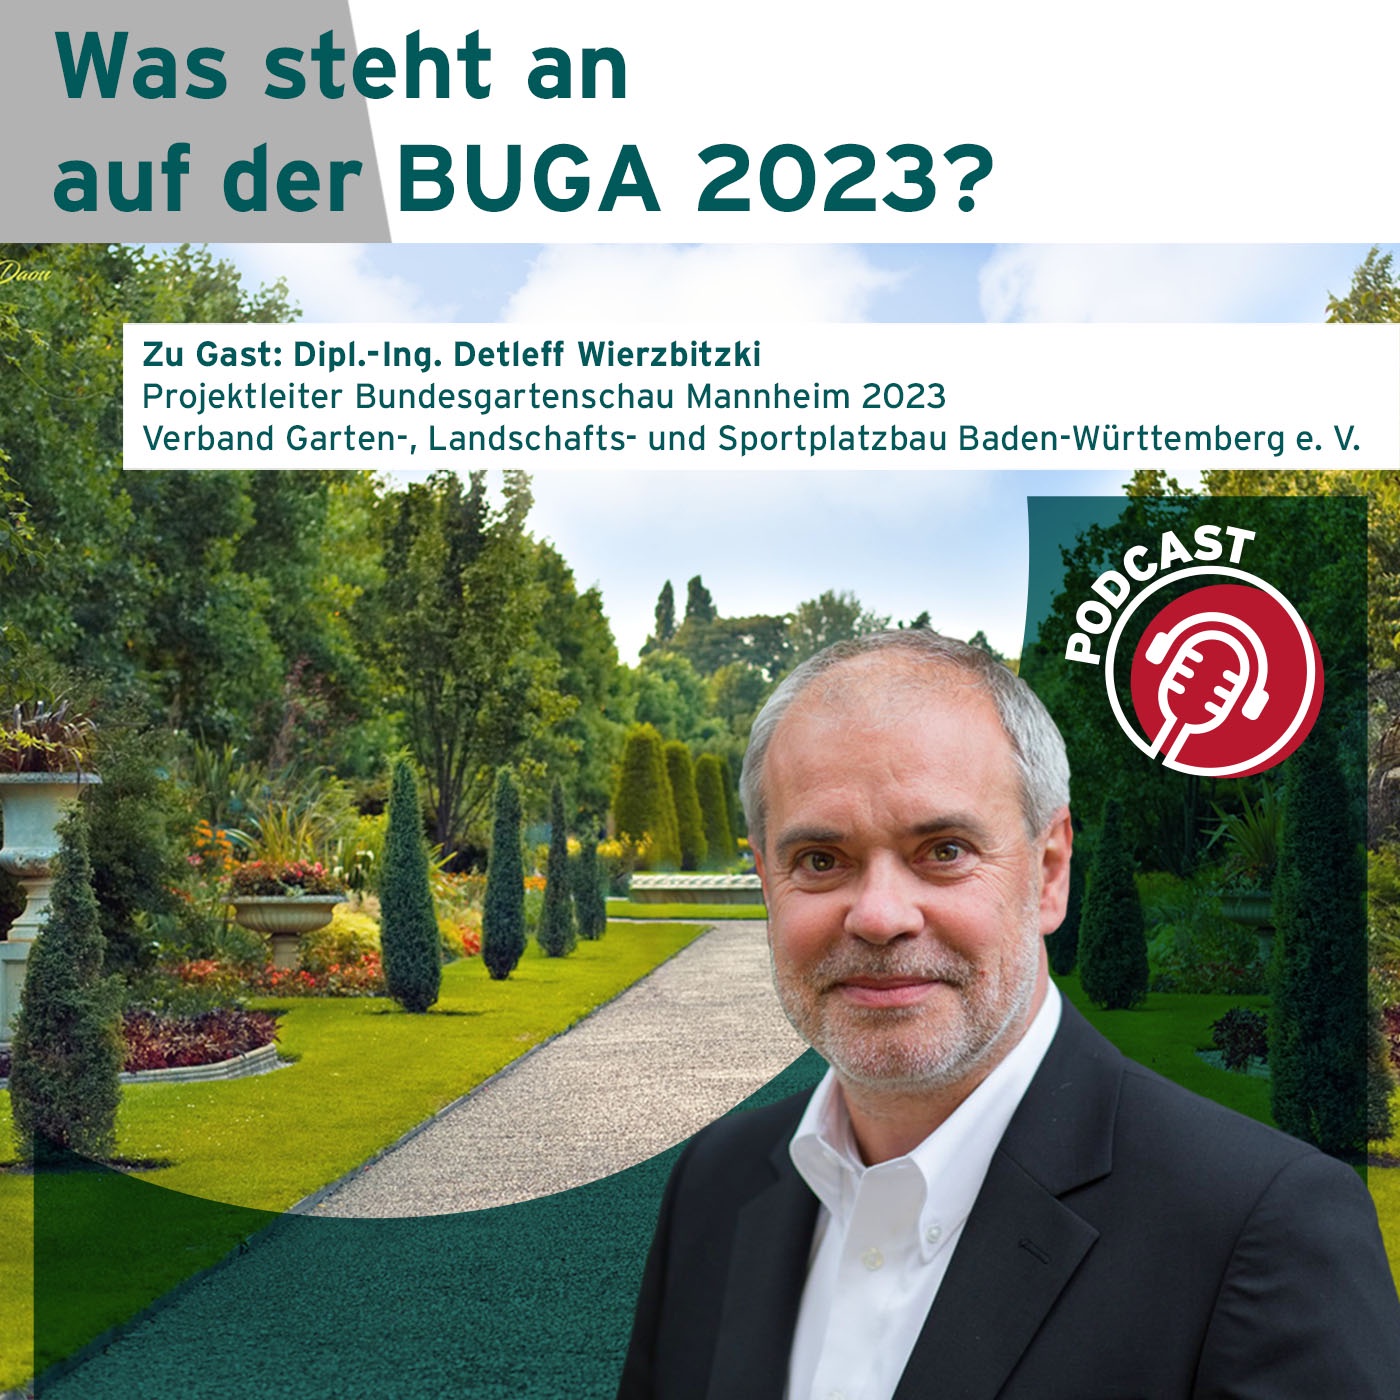 Was ist eigentlich die BUGA und was ist in Mannheim 2023 alles geplant?